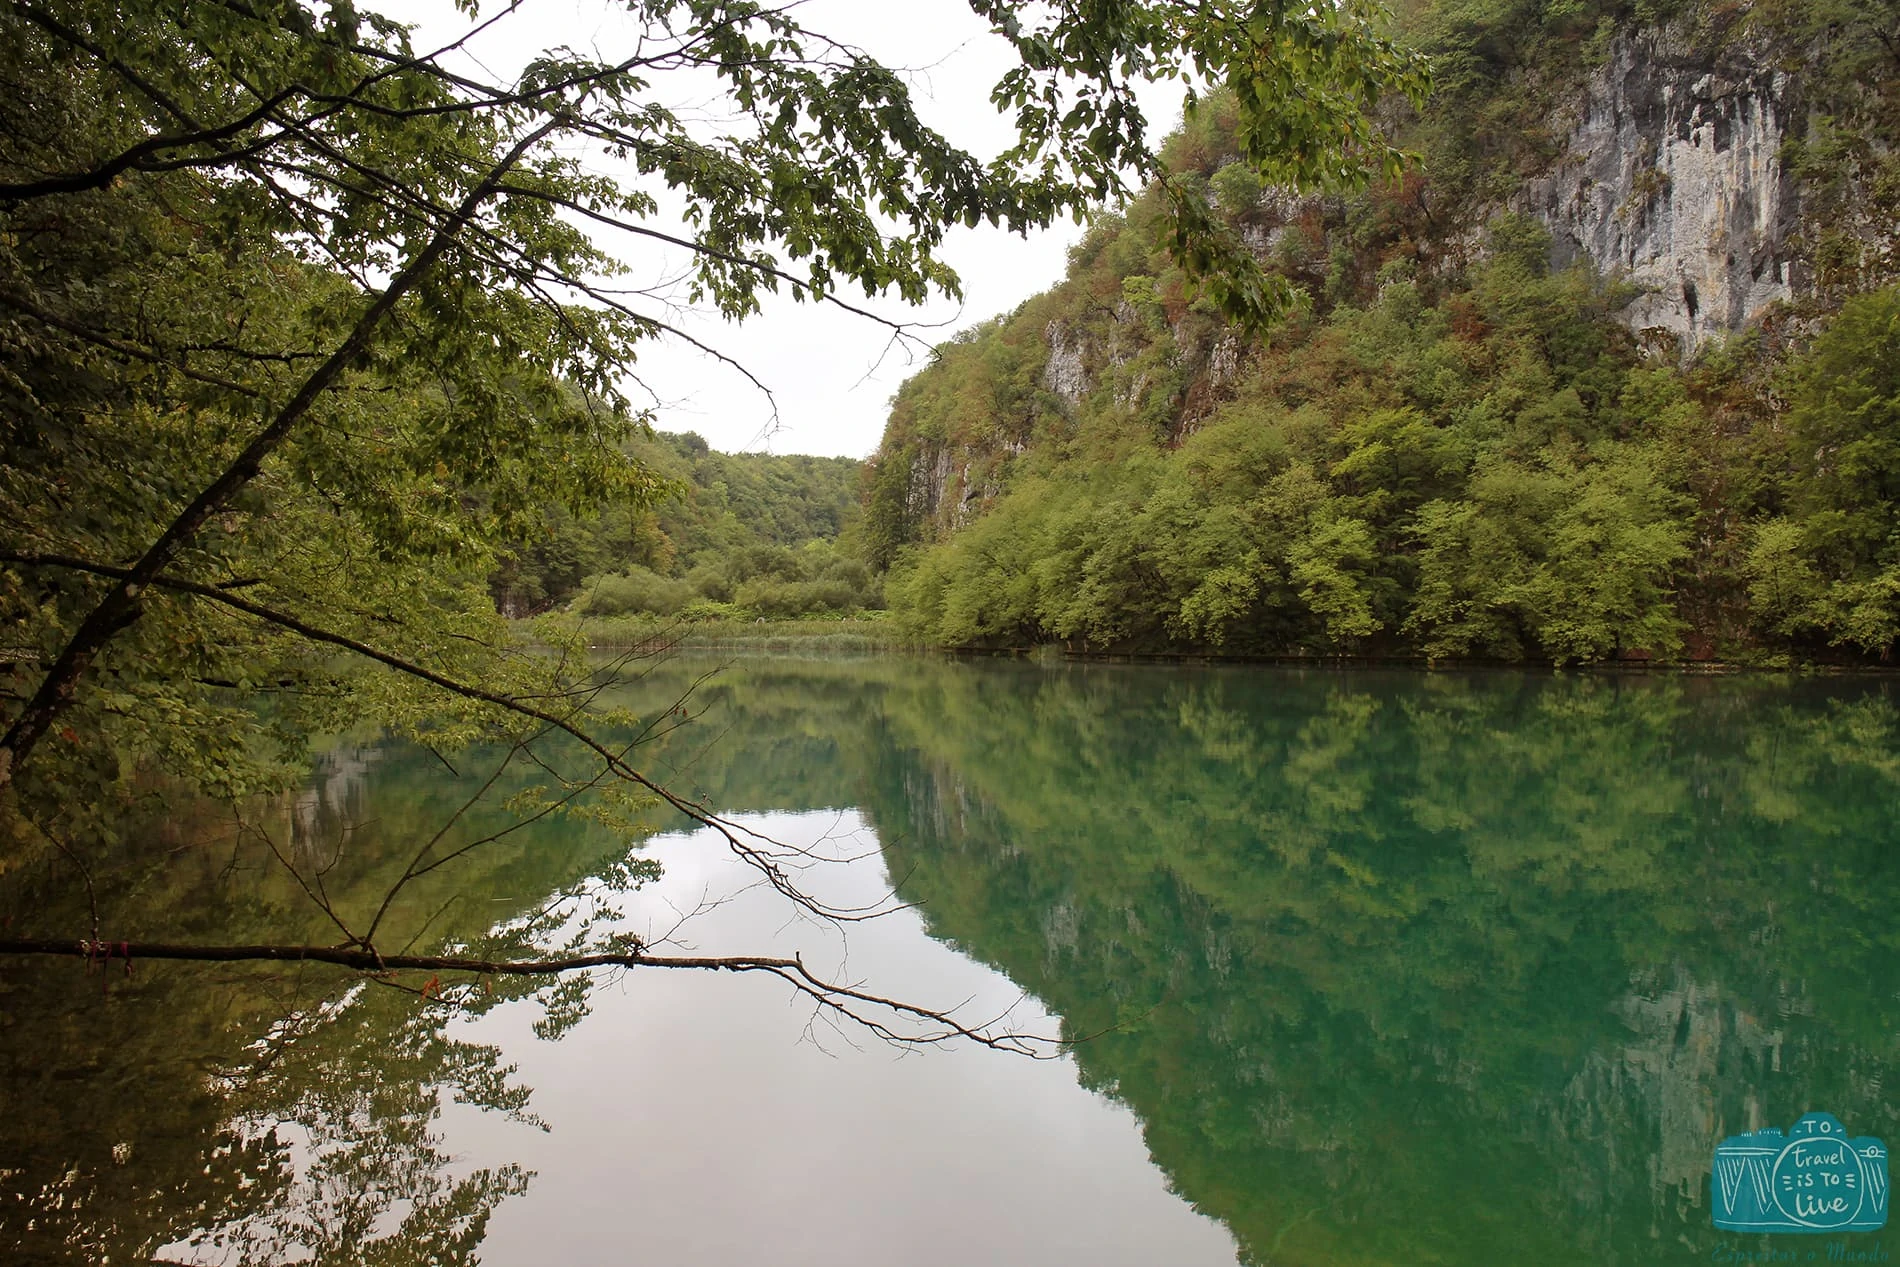 Parque Nacional dos Lagos de Plitvice